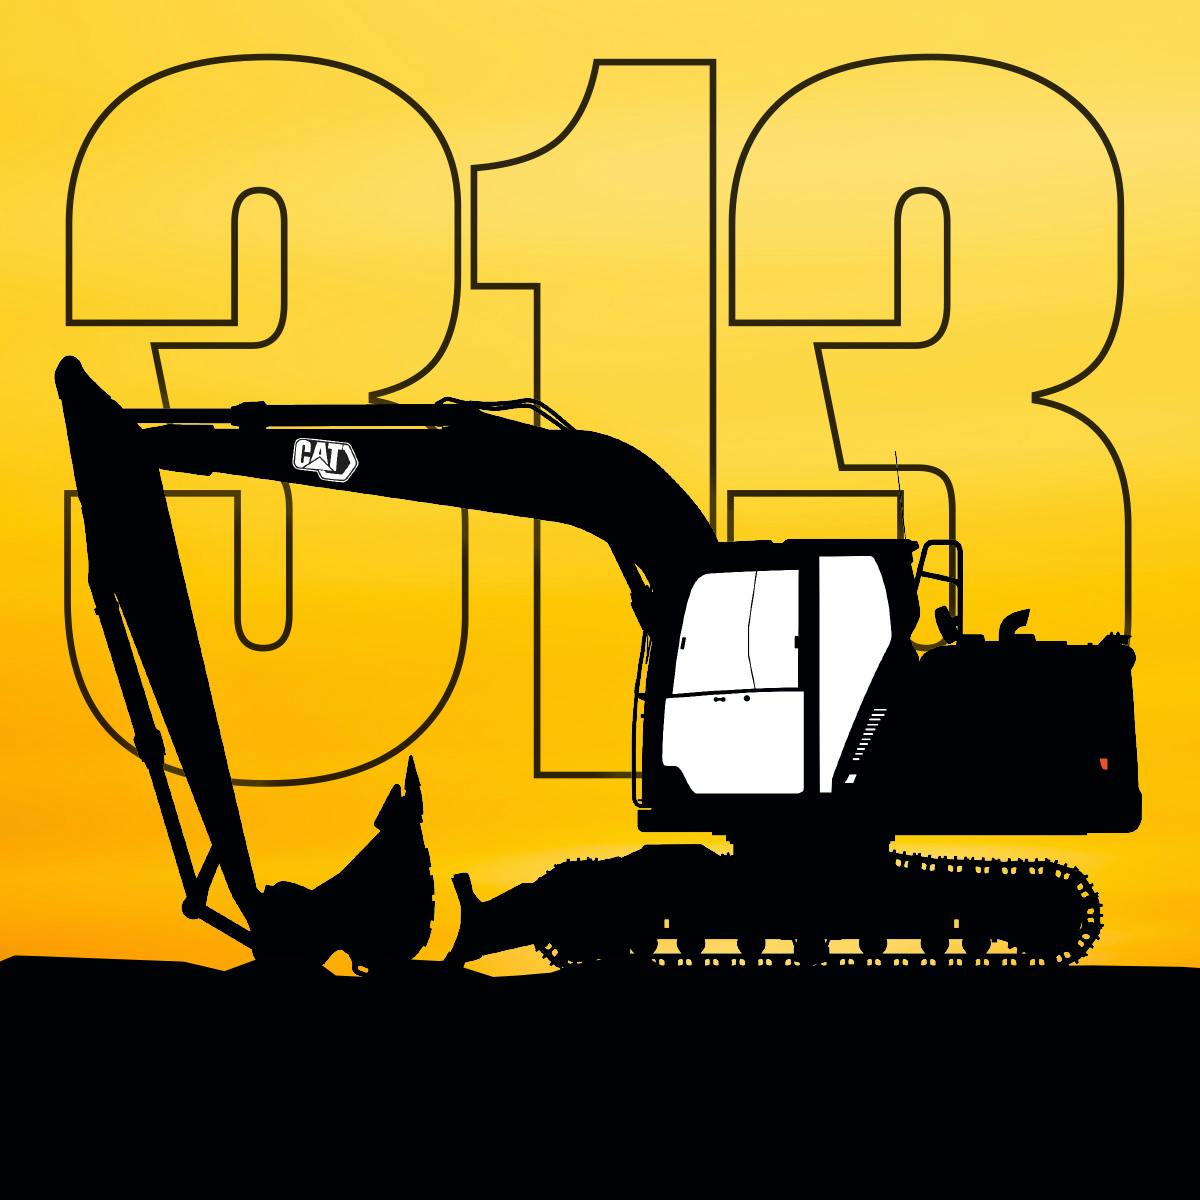 Cat 313 Excavator Promo